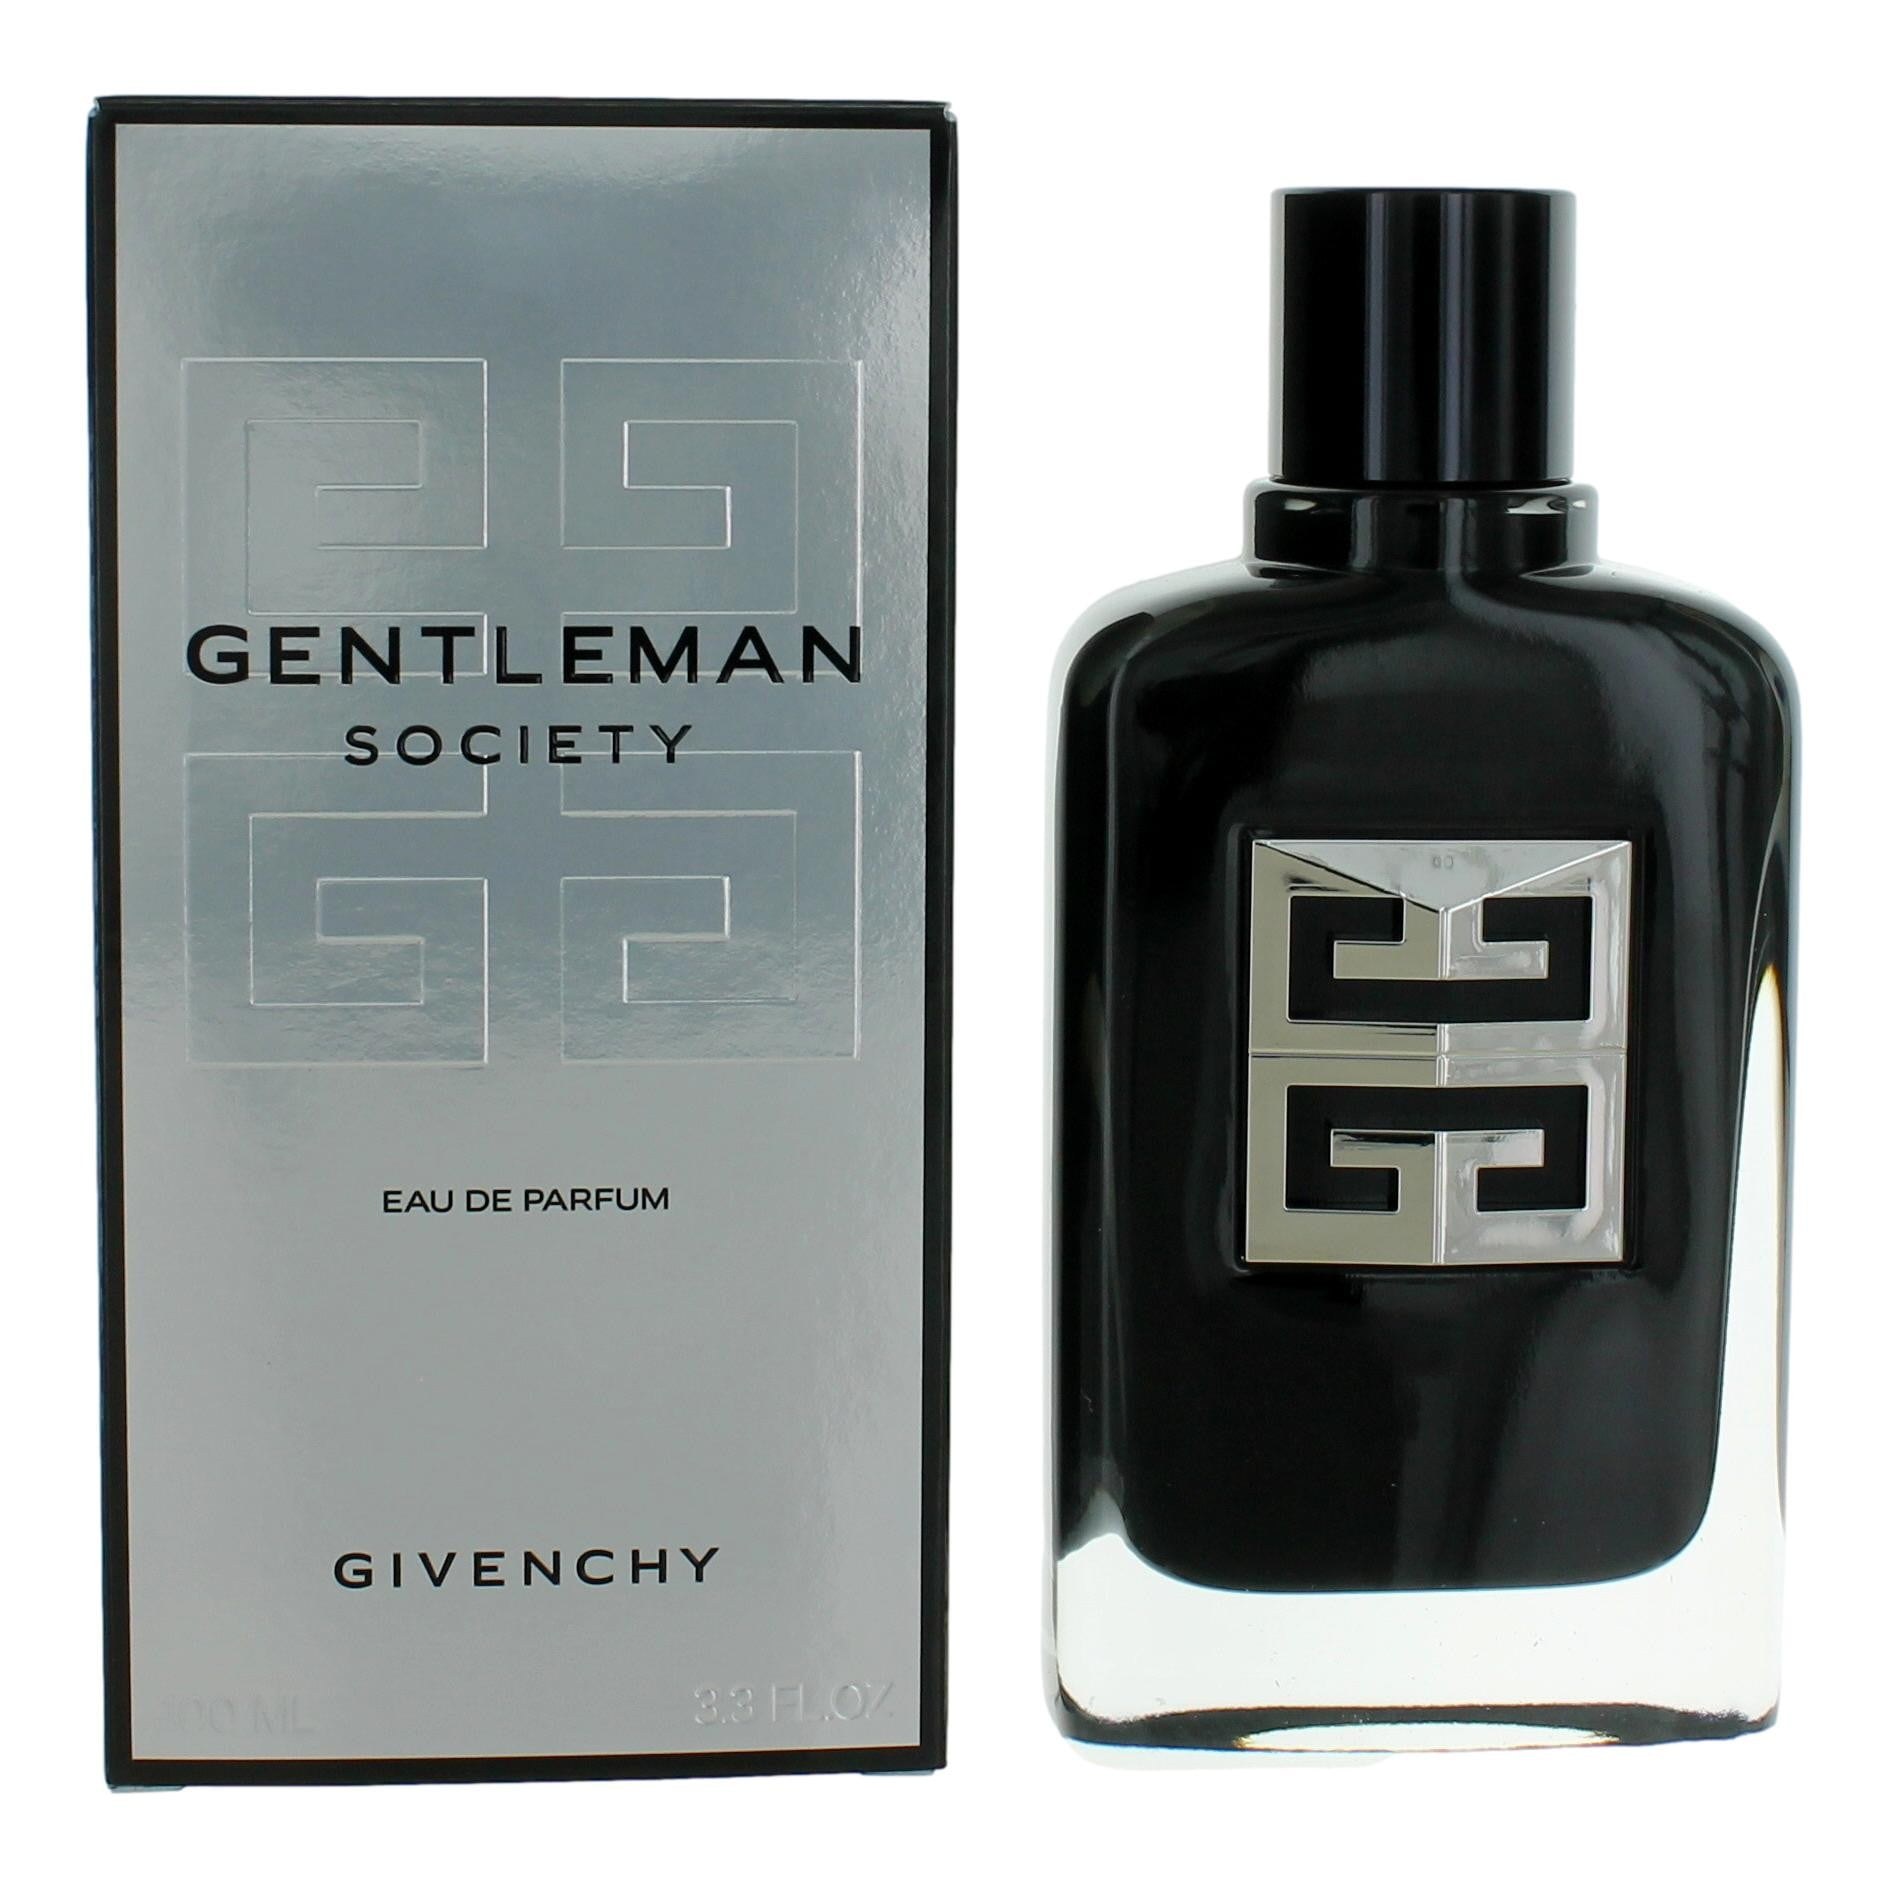 Givenchy Men's Gentleman Givenchy Eau de Toilette - 3.3 oz bottle